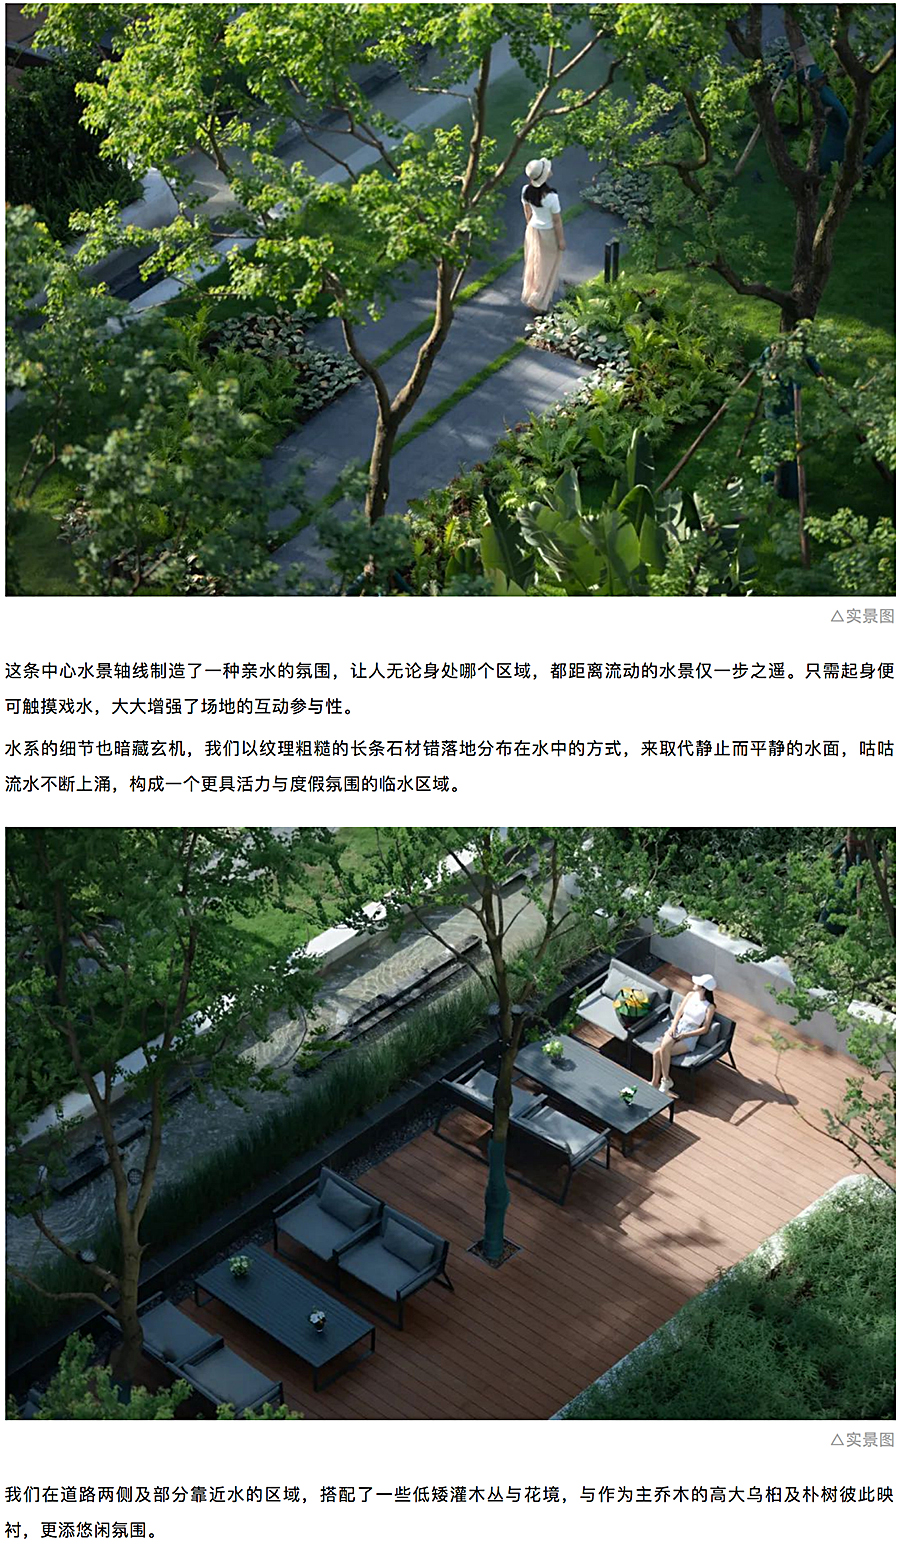 创新洋房社区-引领当代生活-_-重庆东原·月印万川_0013_图层-14.jpg